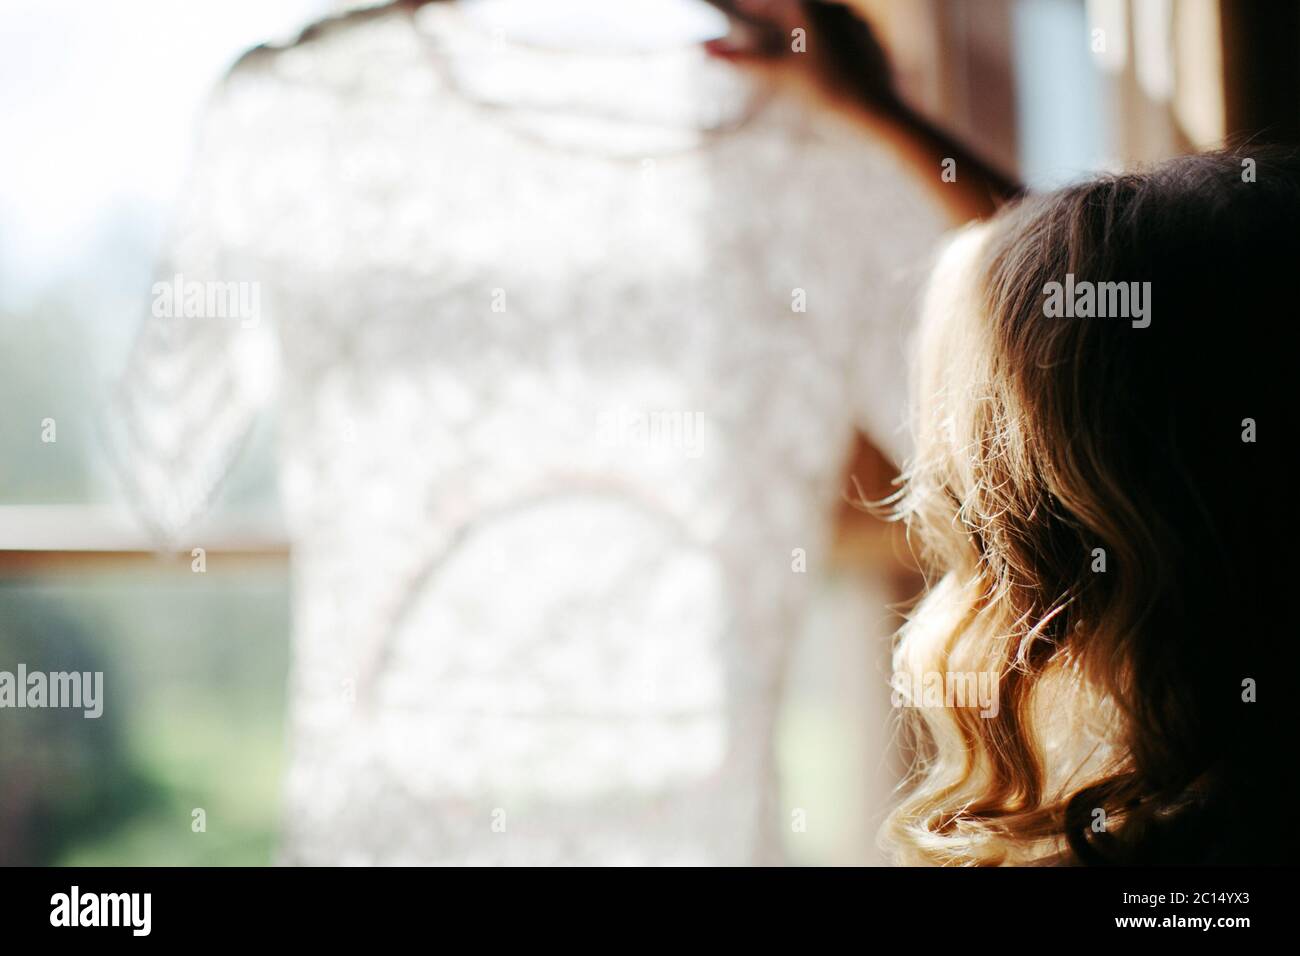 Zugeschnittene Aufnahme der blonden Frau mit lockigen Haaren halten und Blick auf schöne weiße Hochzeitskleid auf einem Kleiderbügel, in der Nähe des Fensters in ihrem Haus, b Stockfoto